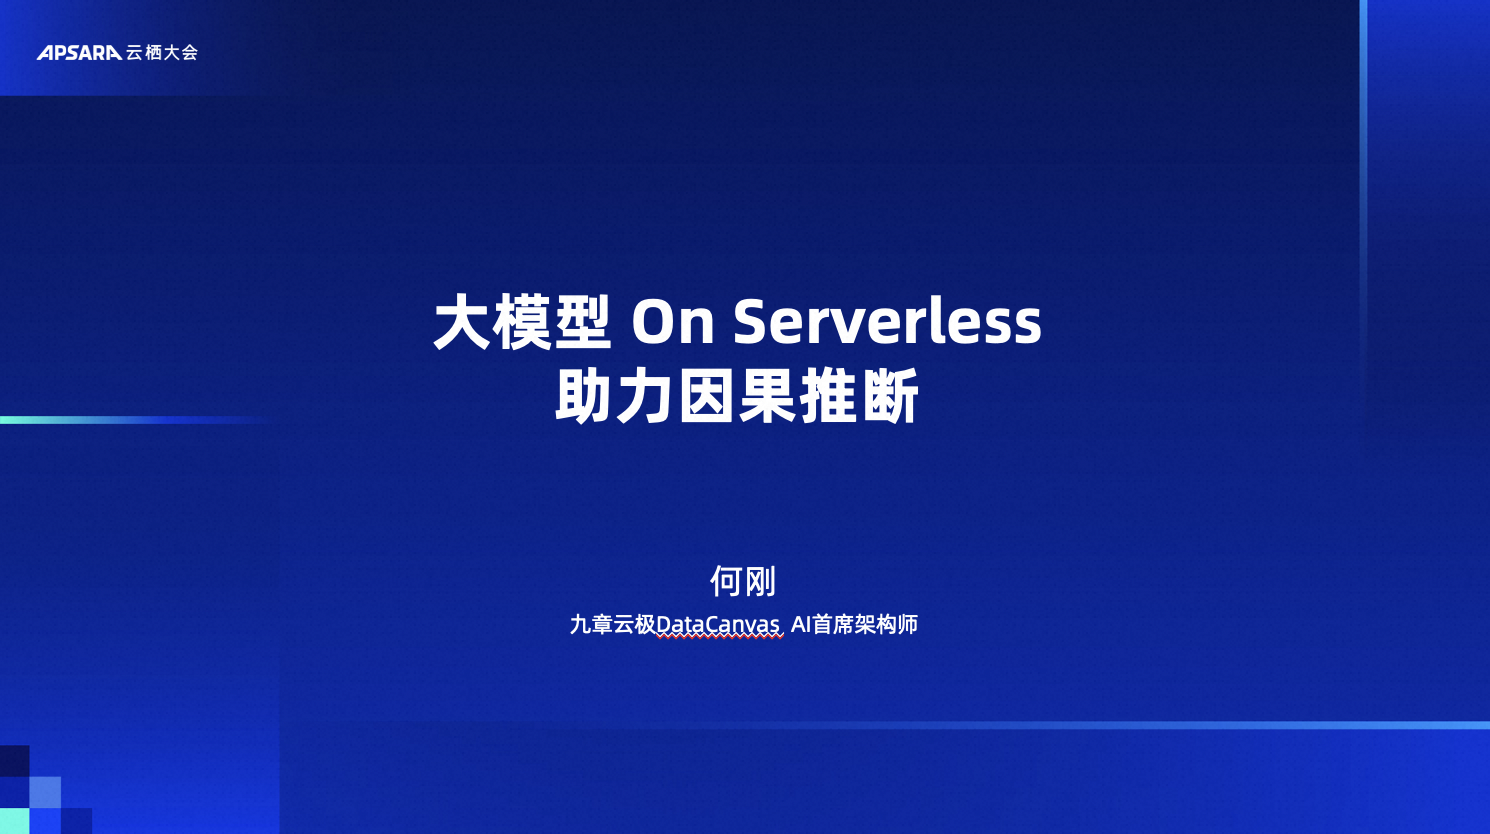 大模型 On Serverless 助力因果推断